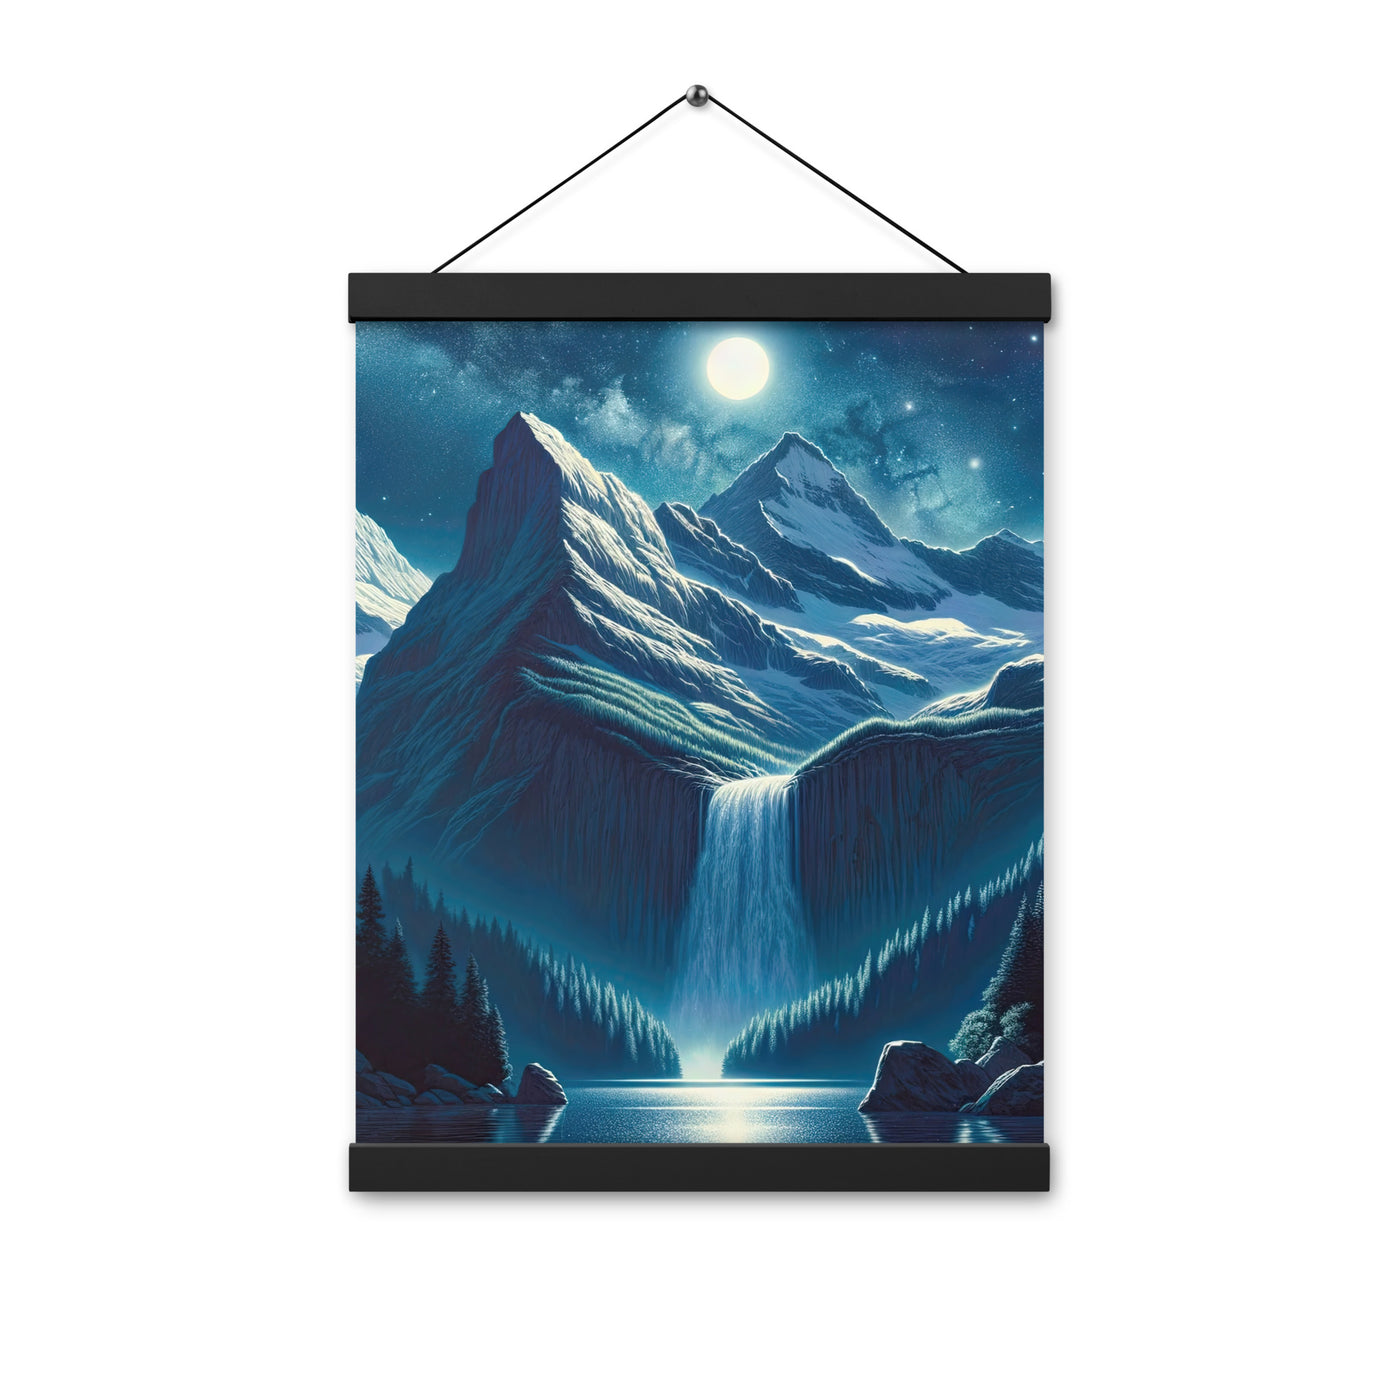 Legendäre Alpennacht, Mondlicht-Berge unter Sternenhimmel - Premium Poster mit Aufhängung berge xxx yyy zzz 30.5 x 40.6 cm